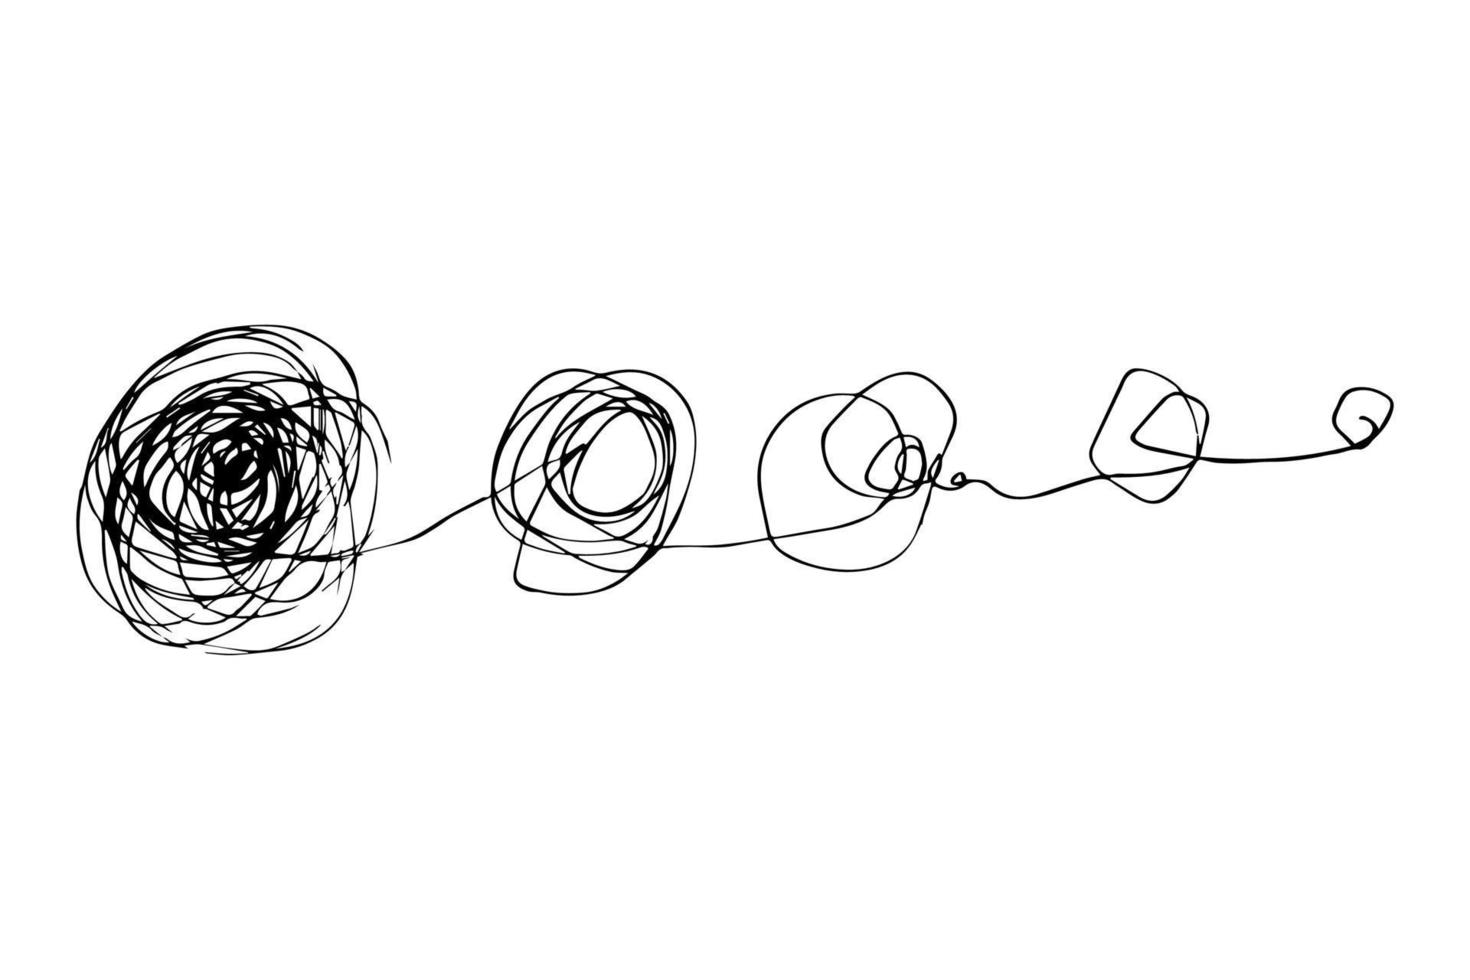 mão desenhada de rabisco sketch.abstract rabisco emaranhado, padrão de doodle de caos. ilustração vetorial isolada no fundo branco vetor